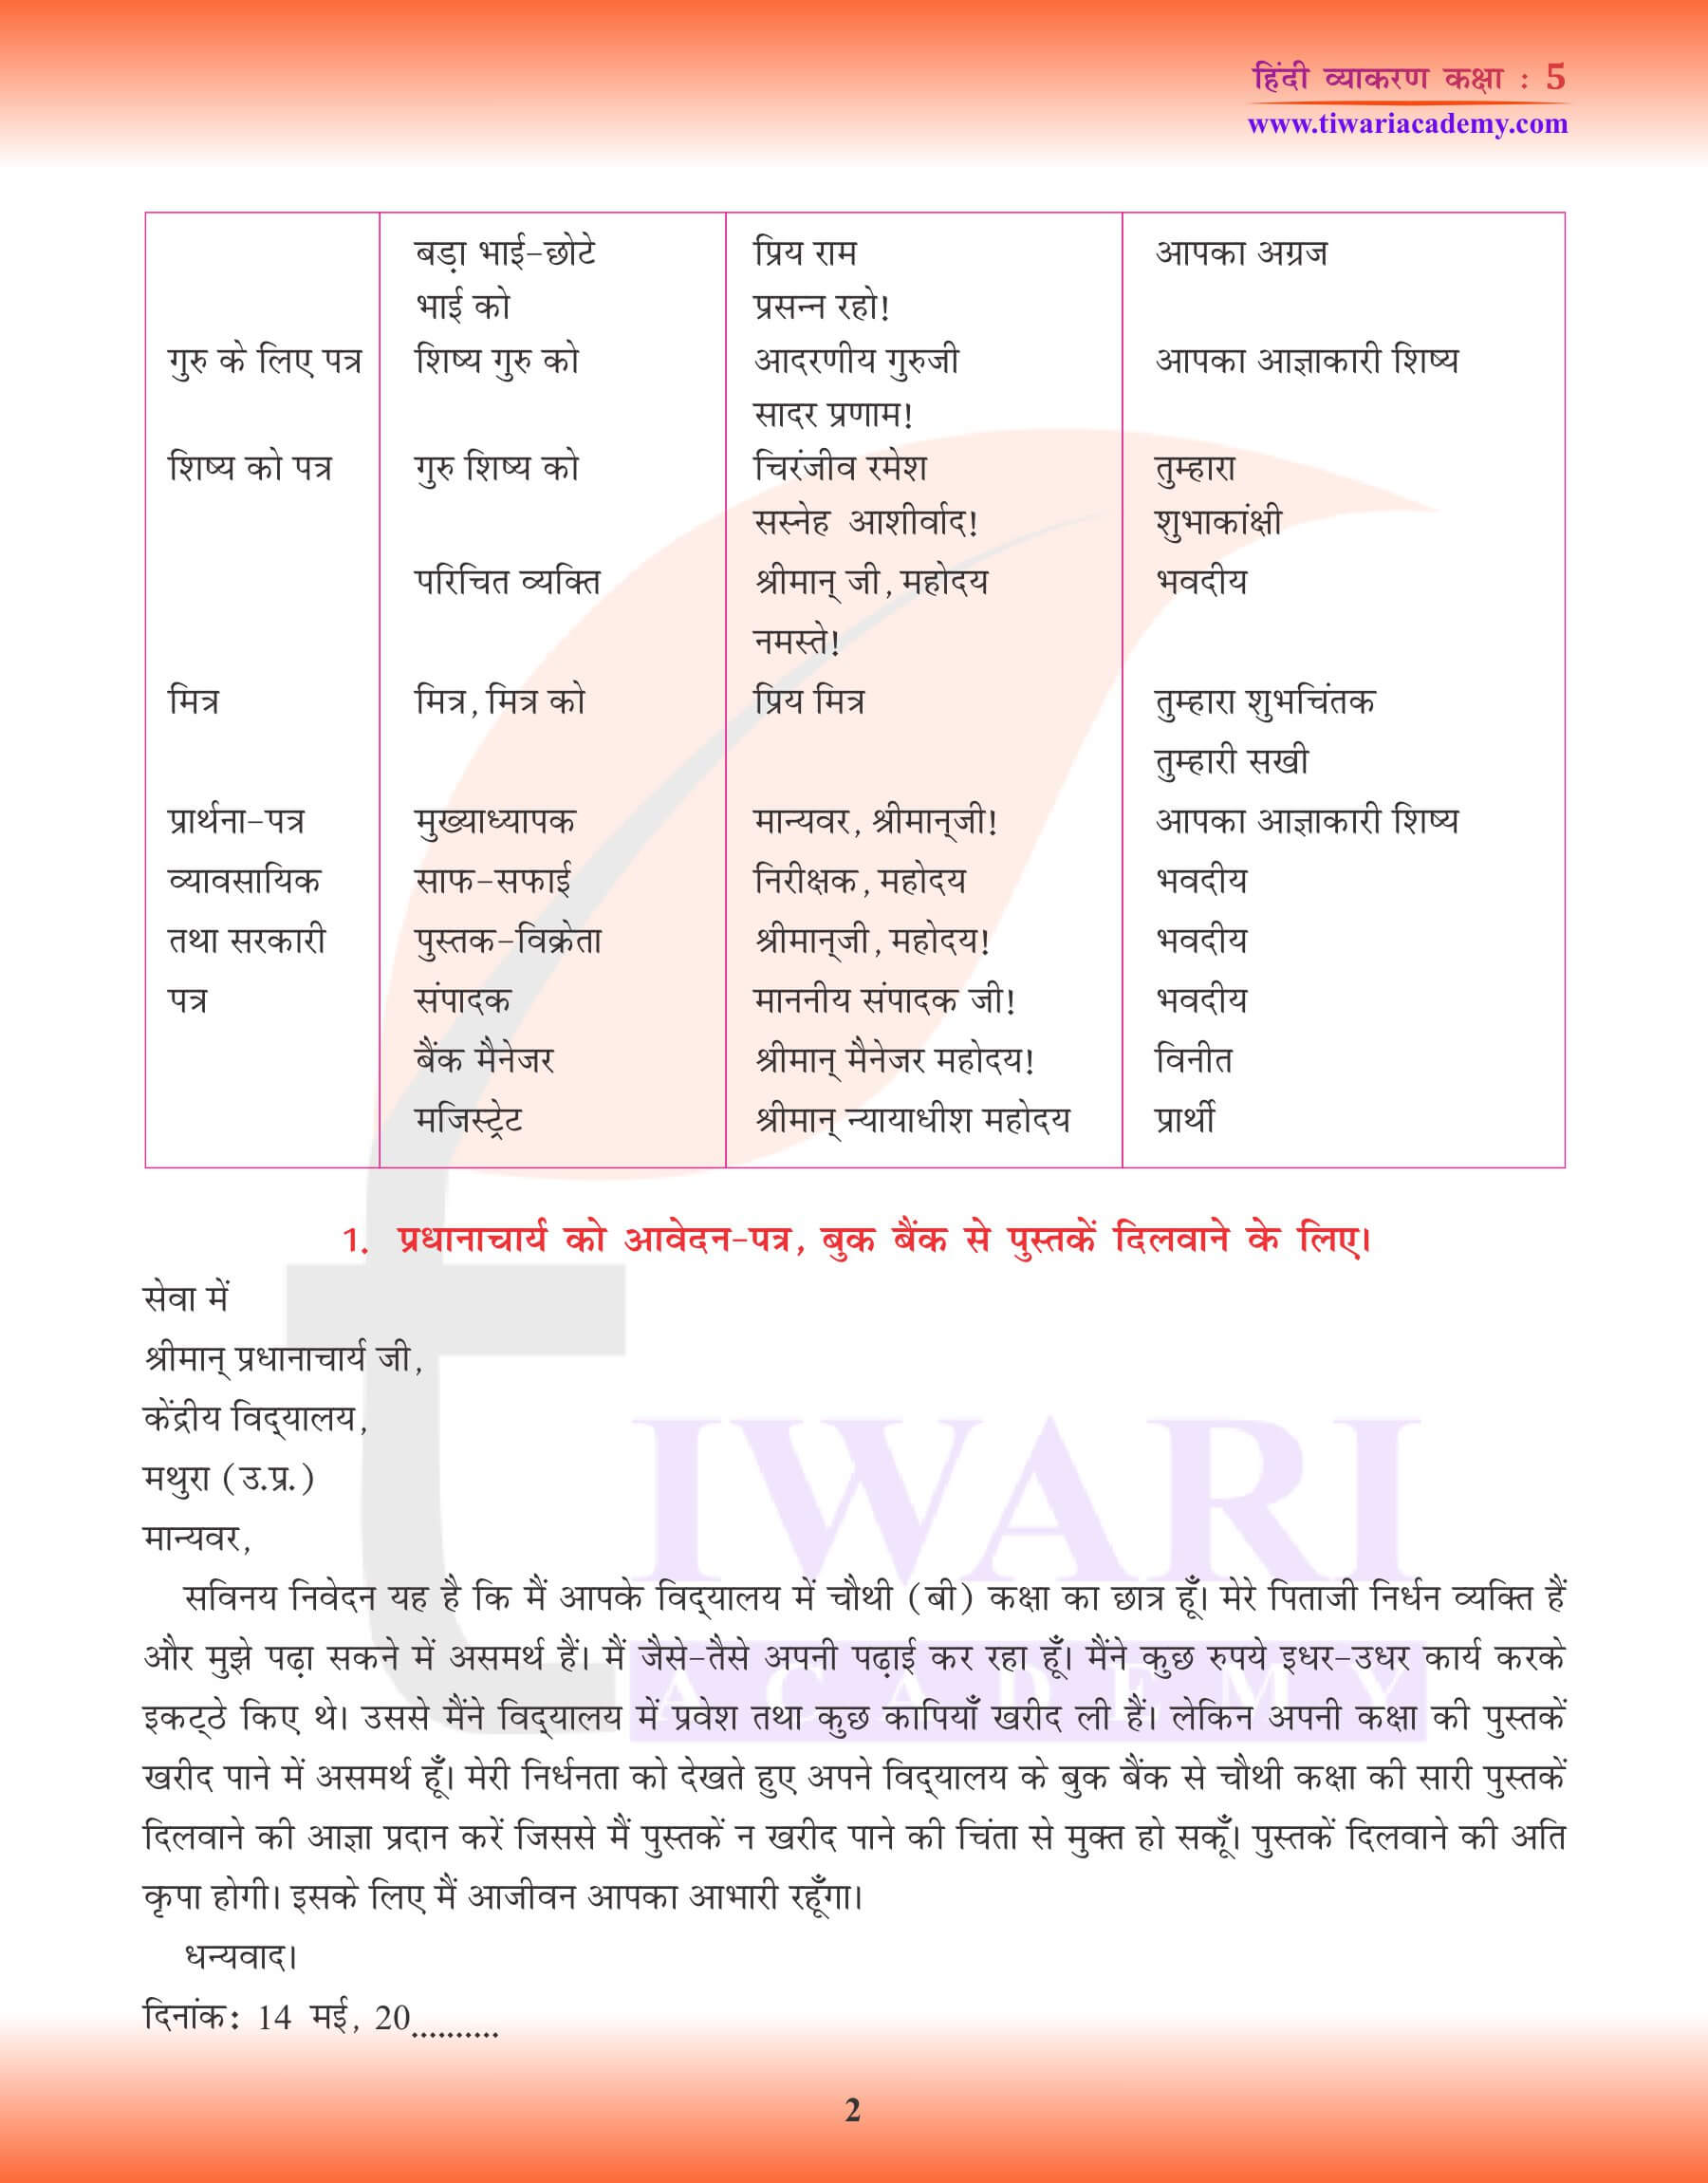 कक्षा 5 हिंदी व्याकरण में पत्र लेखन